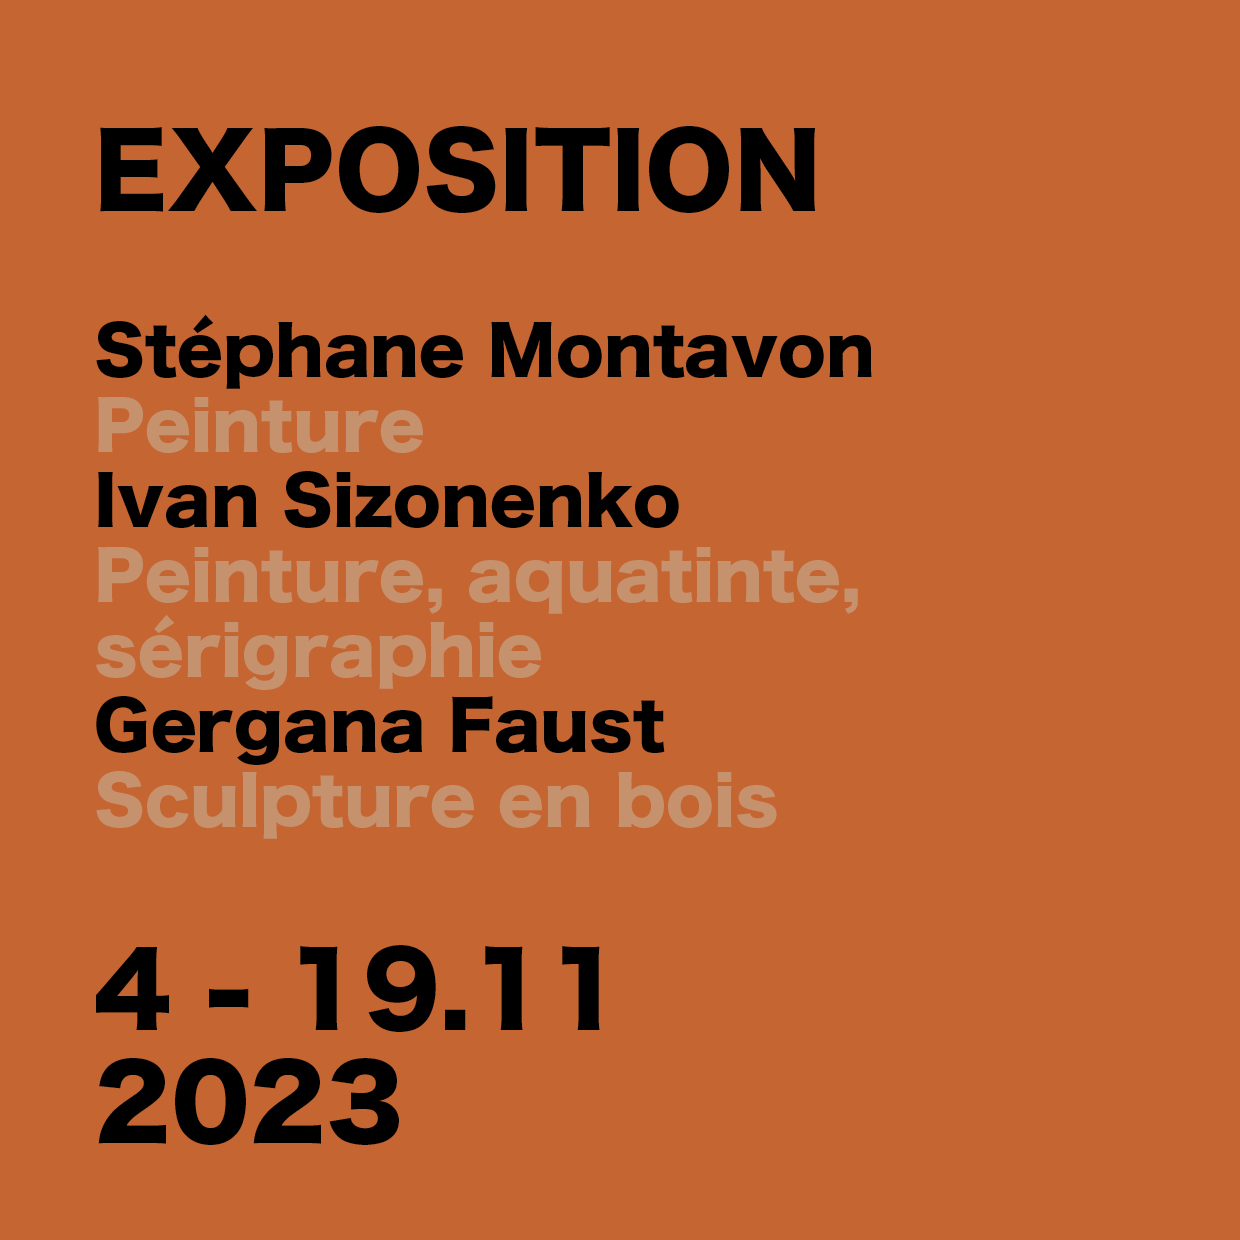 EXPO NOV 2023